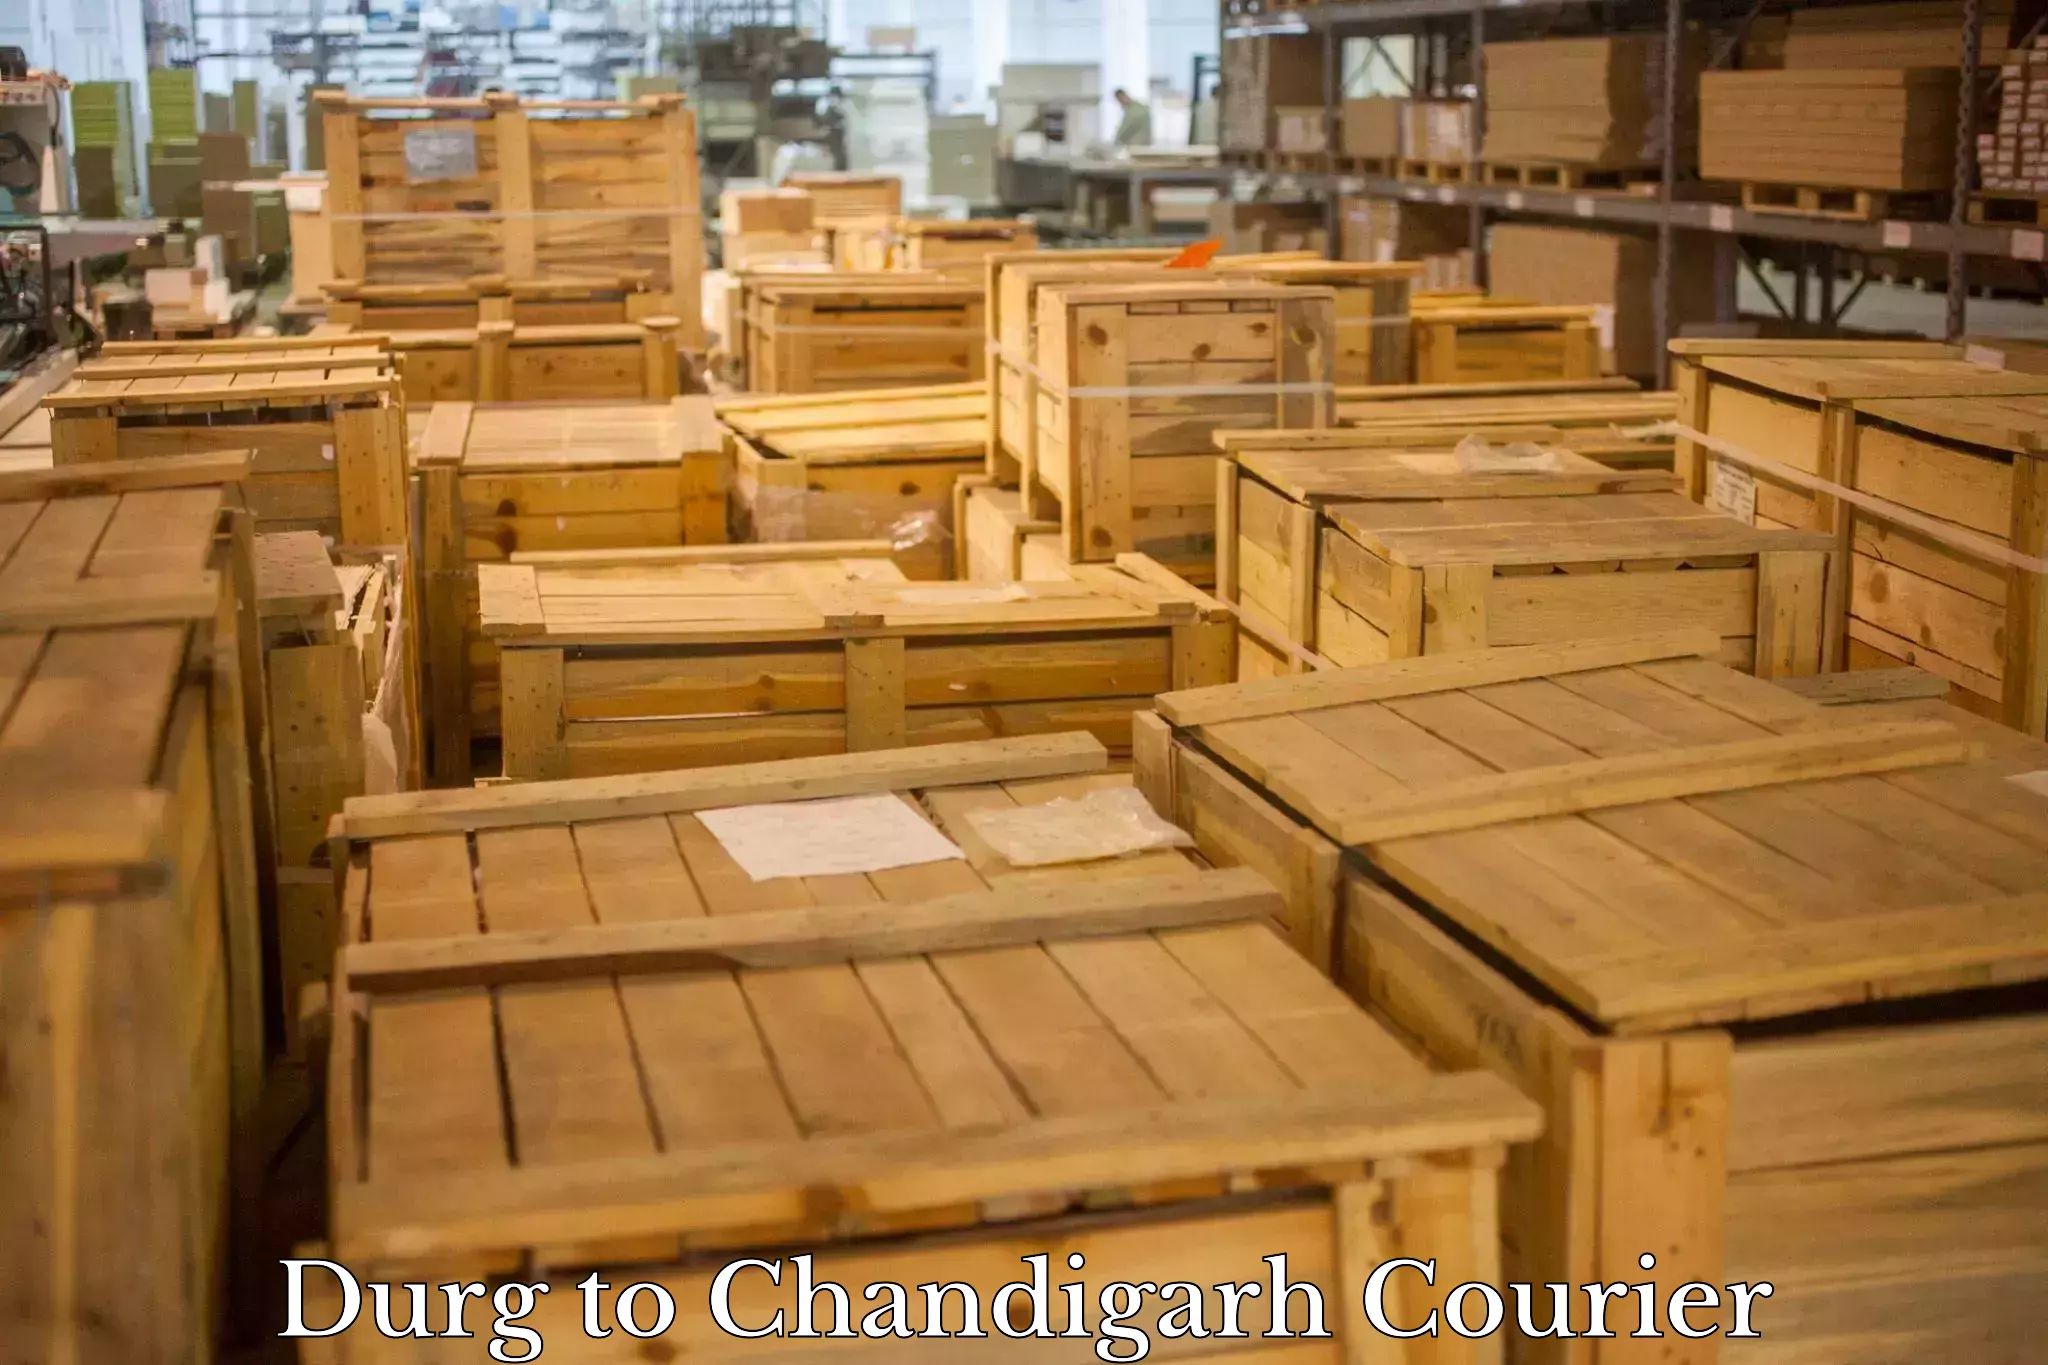 Efficient parcel service Durg to Chandigarh